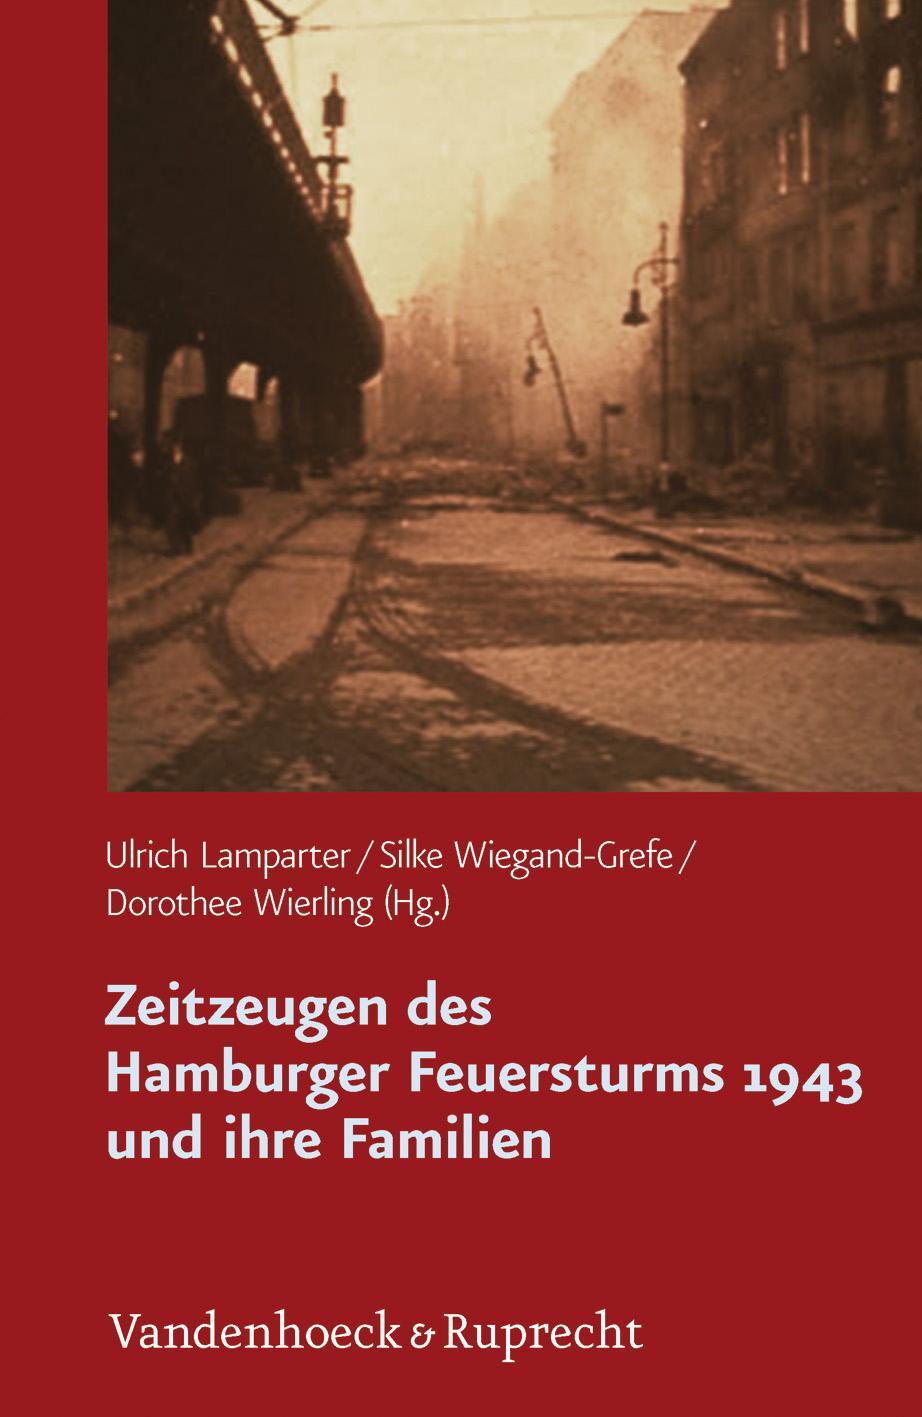 Zeitzeugen des Hamburger Feuersturms 1943 und ihre Familien - Haag, Antje/Stuhr, Ulrich/Börsch, Sabine u a